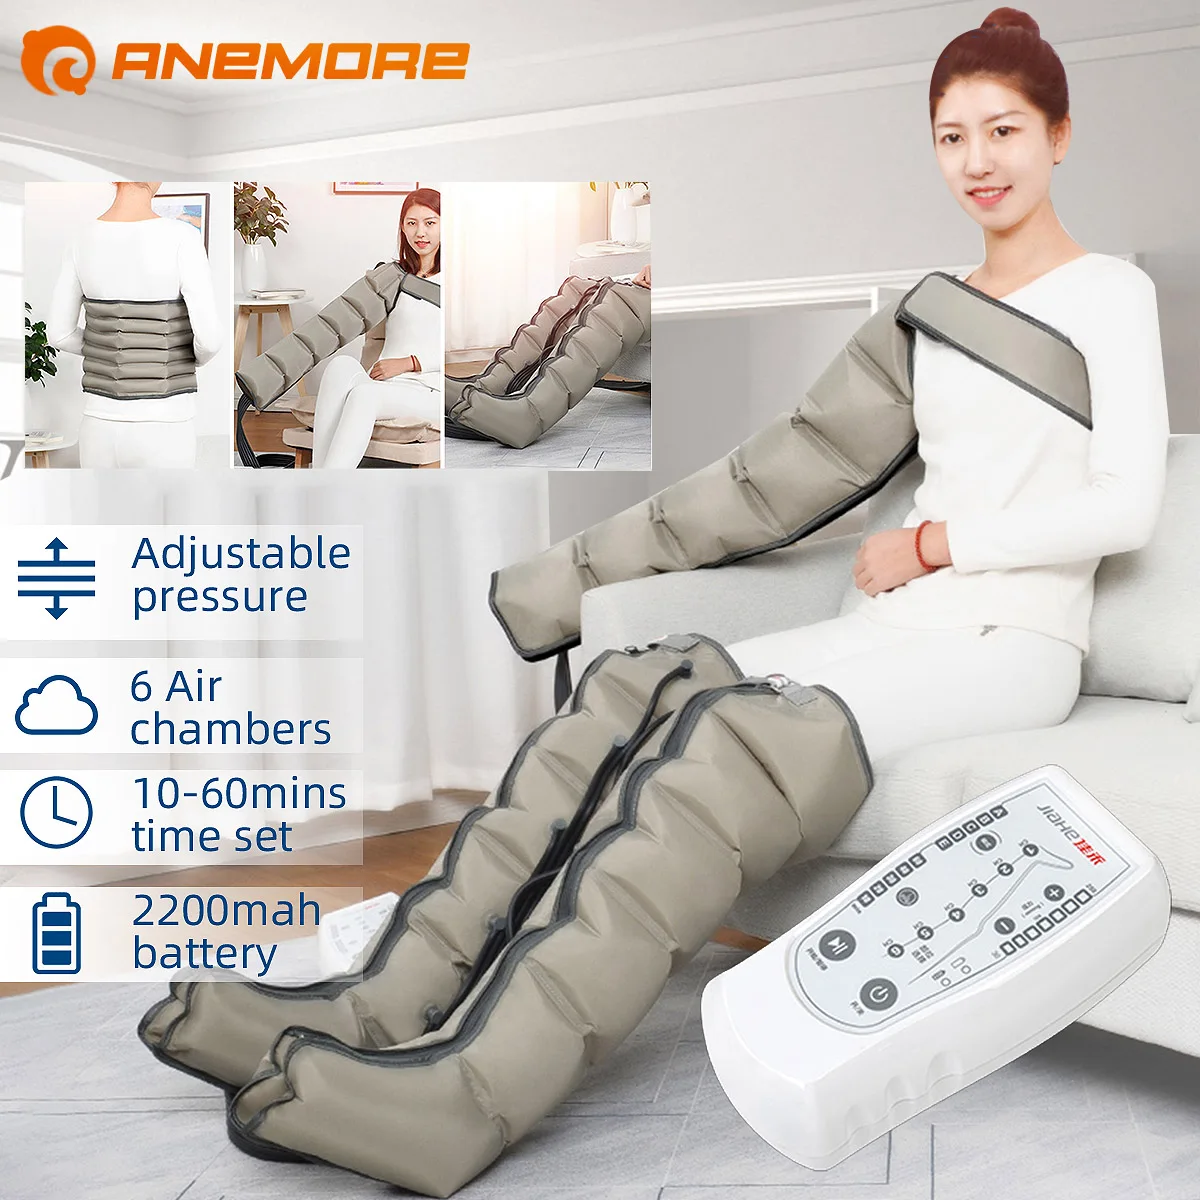 

Массажер ANEMORE компрессионный для ног, беспроводной аппарат для прессотерапии, реабилитации крови, 5 режимов